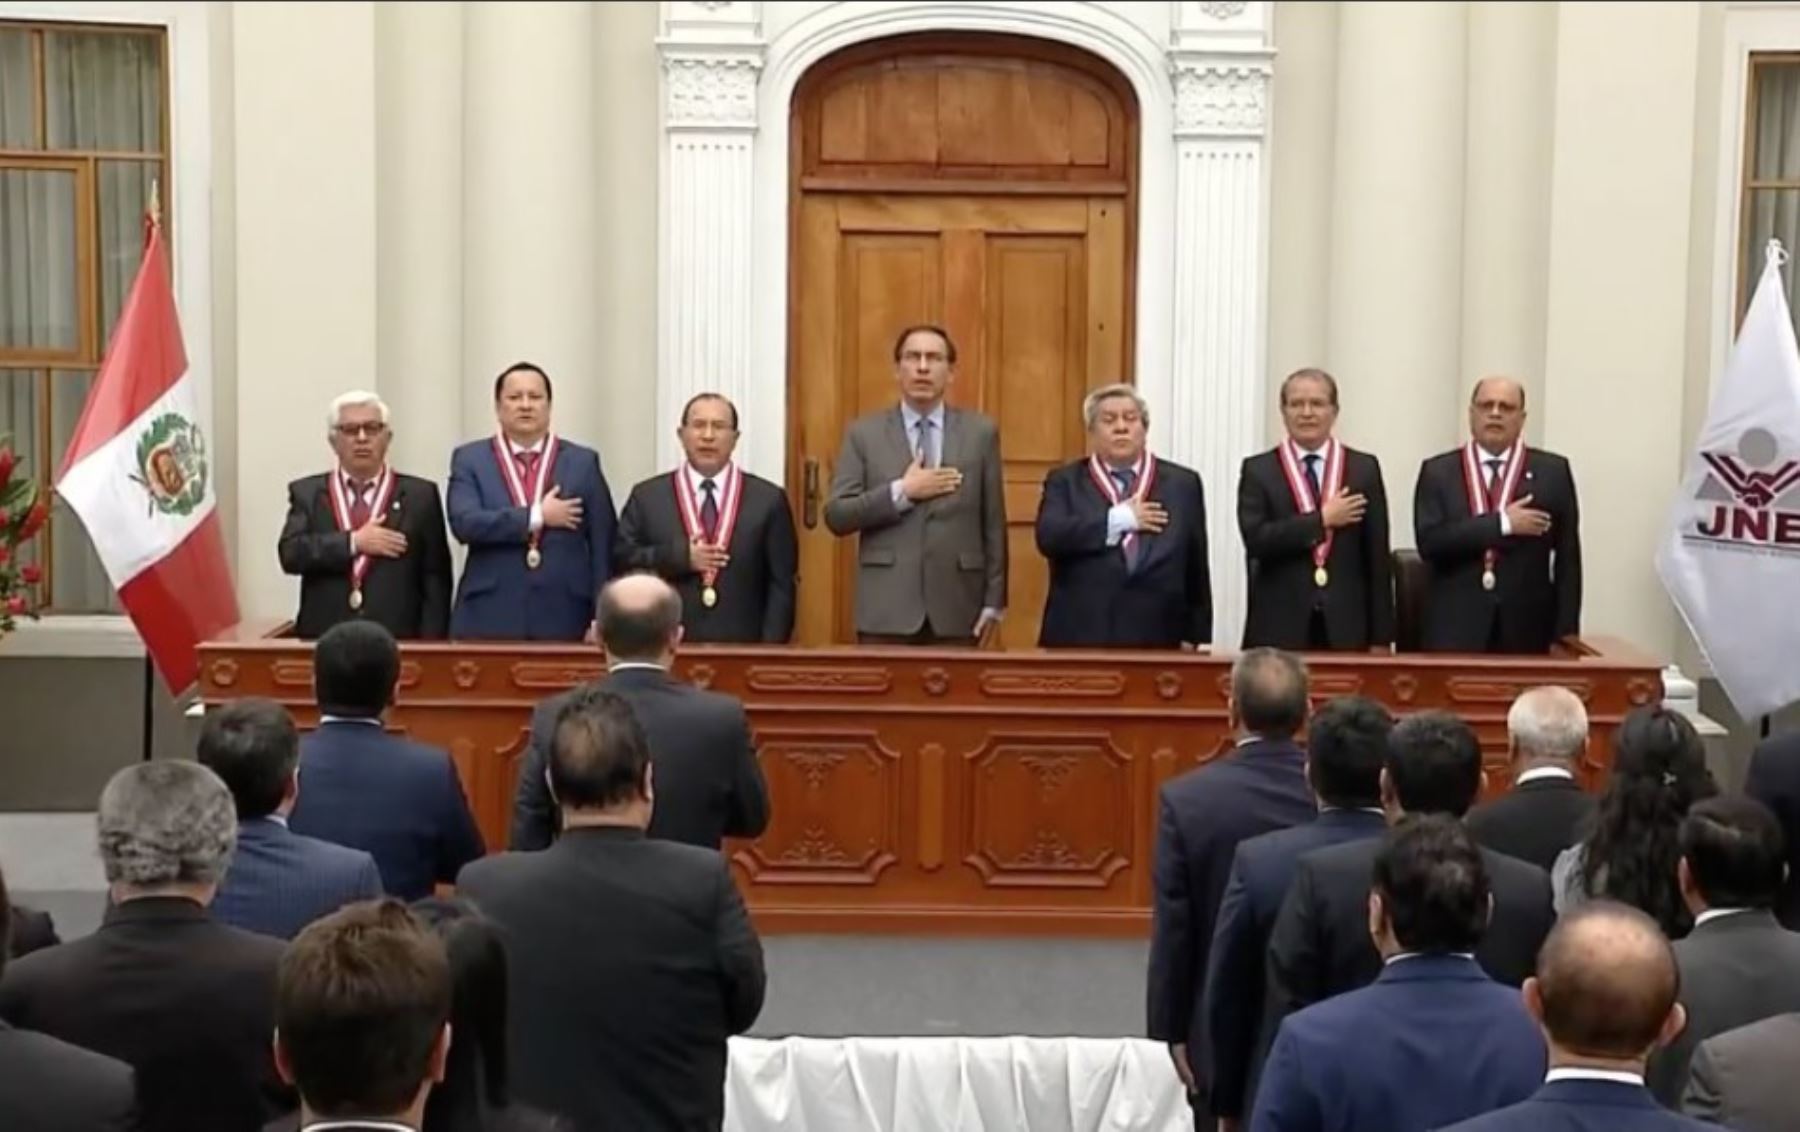 Presidente Martín Vizcarra participa en entrega de credenciales a gobernadores y vicegobernadores electos para el periodo 2019-2022.